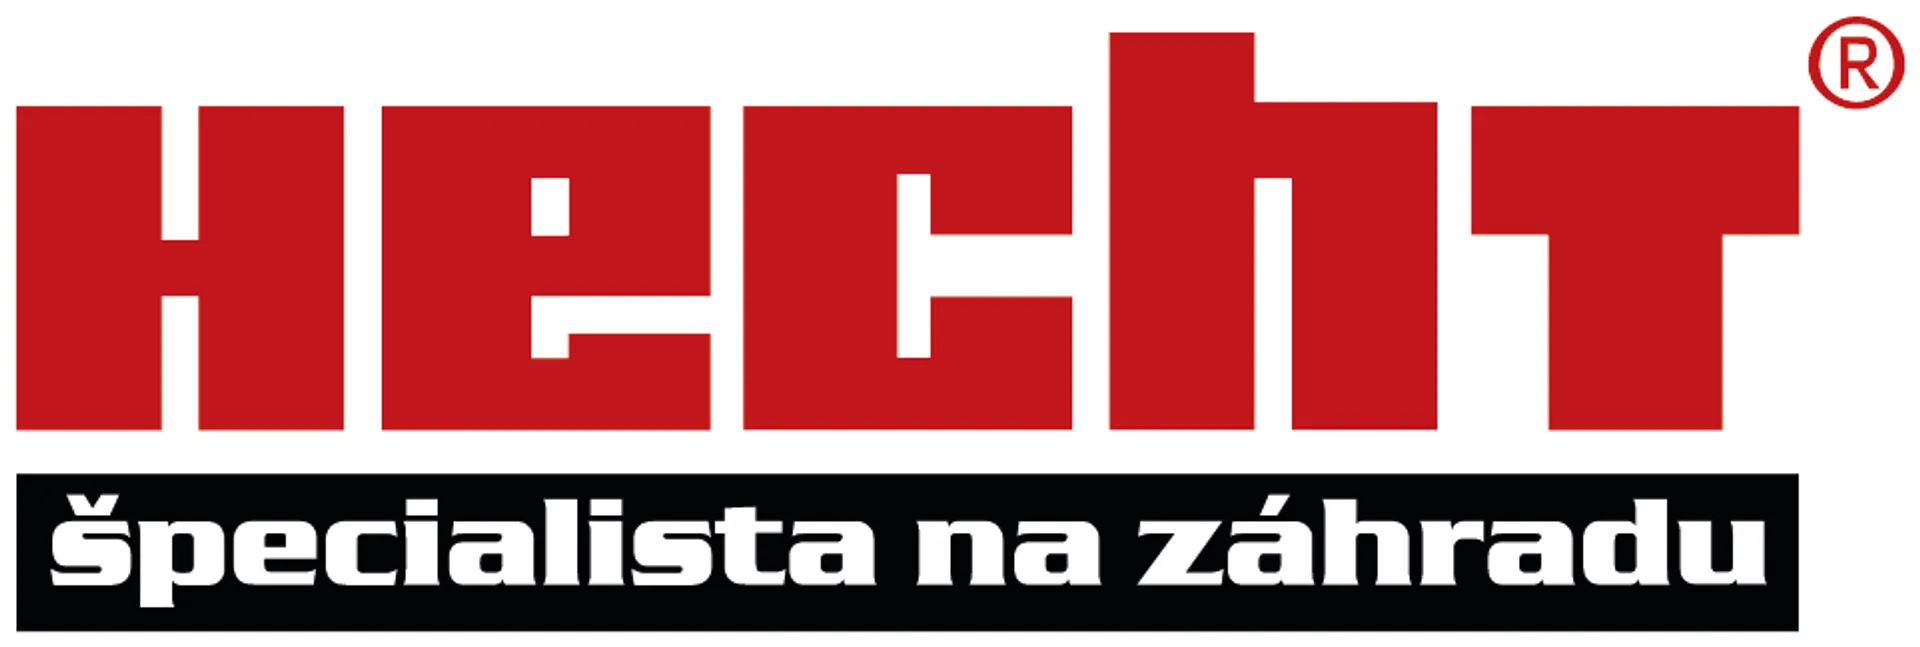 HECHT logo